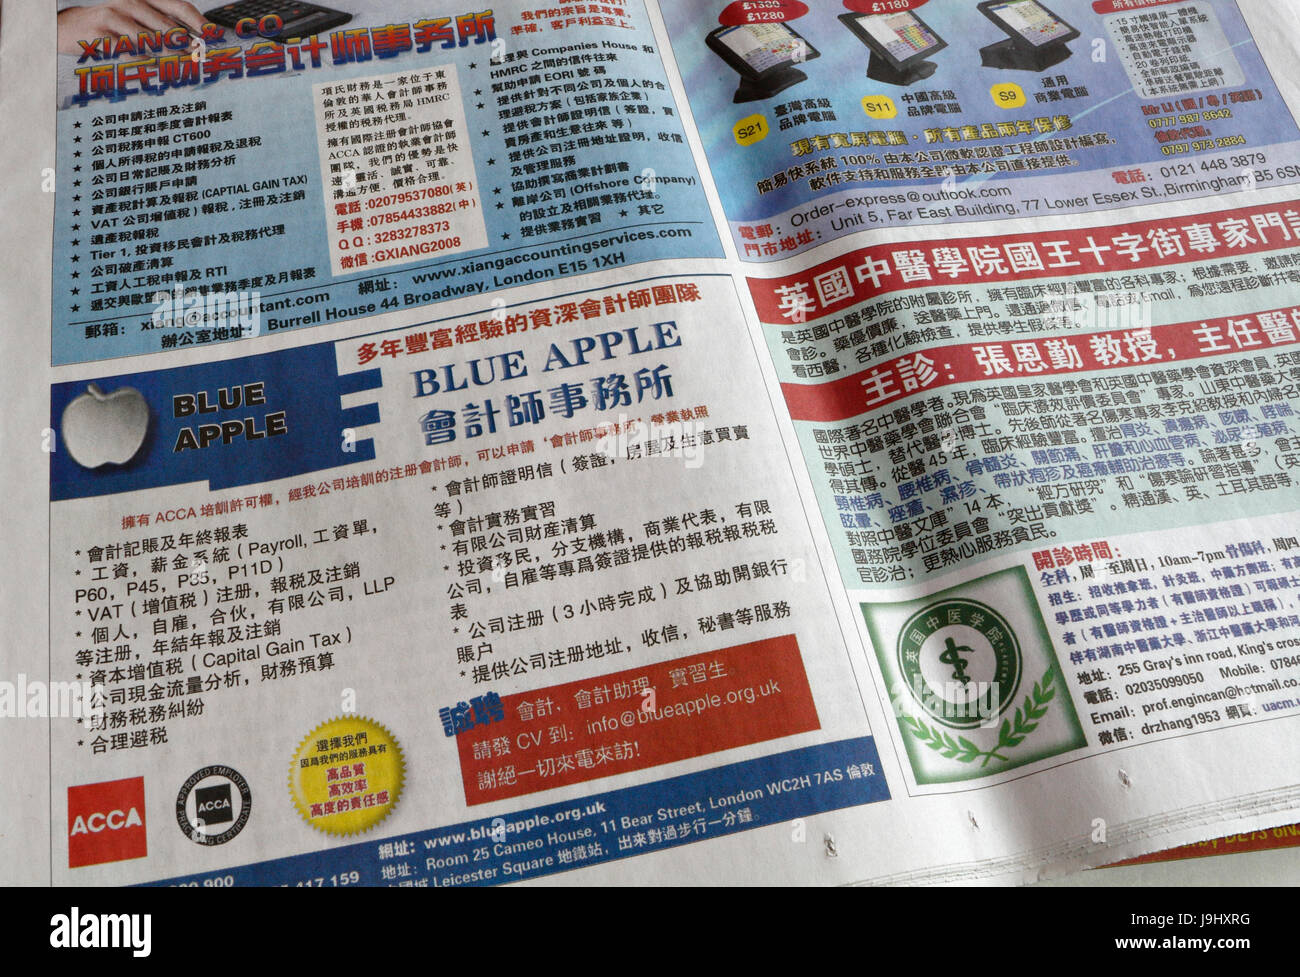 Adverts in British Chinese newspaper, chinese community uk Stock Photo